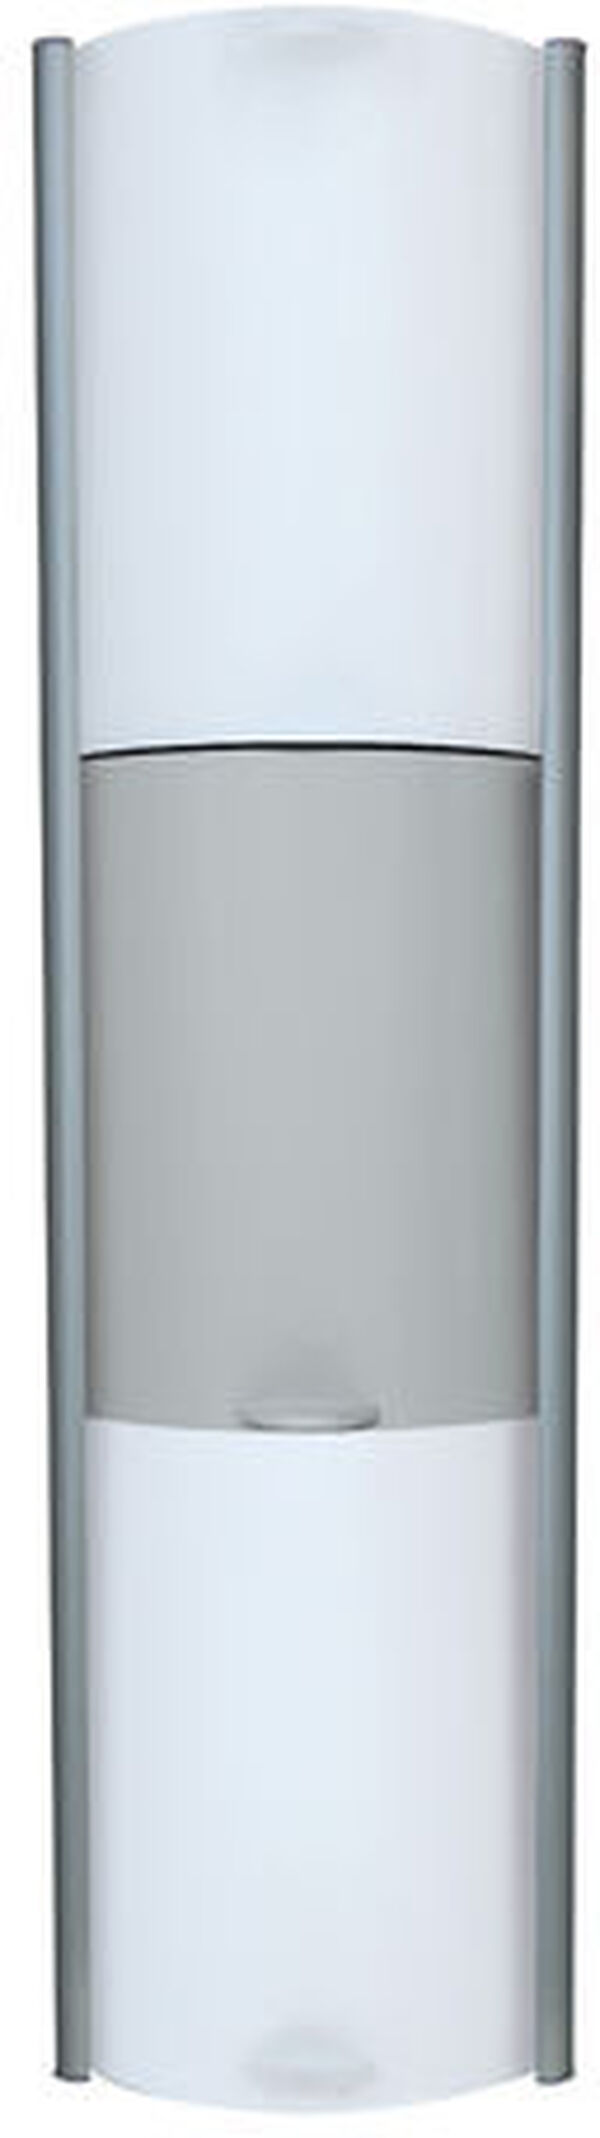 Duschenablage Duscholux Showerbox silber hochglanzeloxiert weiss-grau image number 0